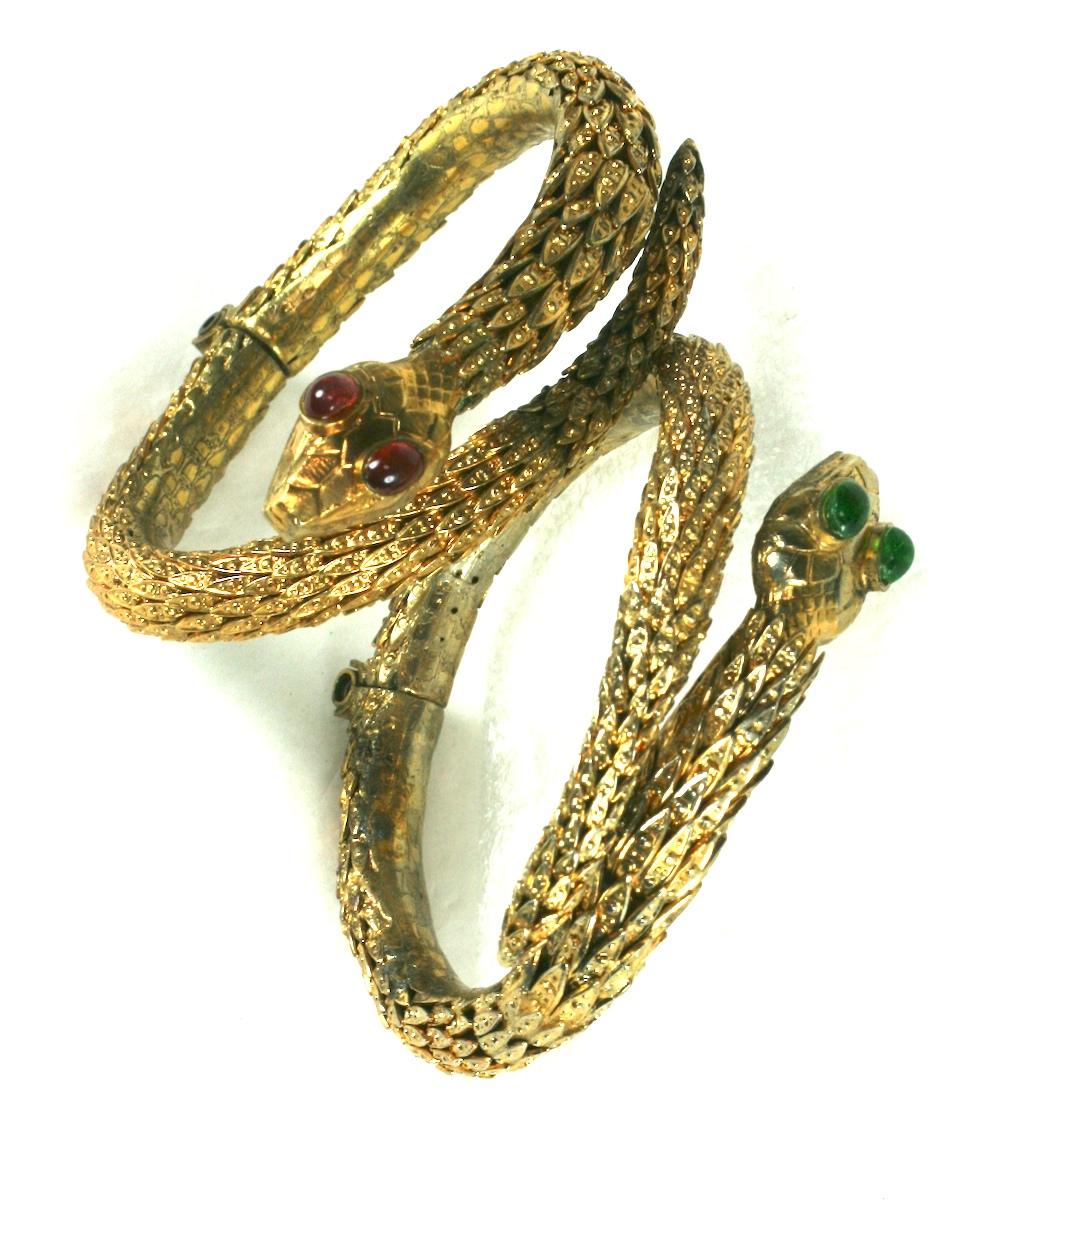 Rare paire de bracelets en serpent Chanel Haute Couture d'époque par Maison Goossens. Ces bracelets articulés fabriqués à la main sont composés de dizaines de capuchons gradués en filigrane doré soudés ensemble pour former le corps de chaque